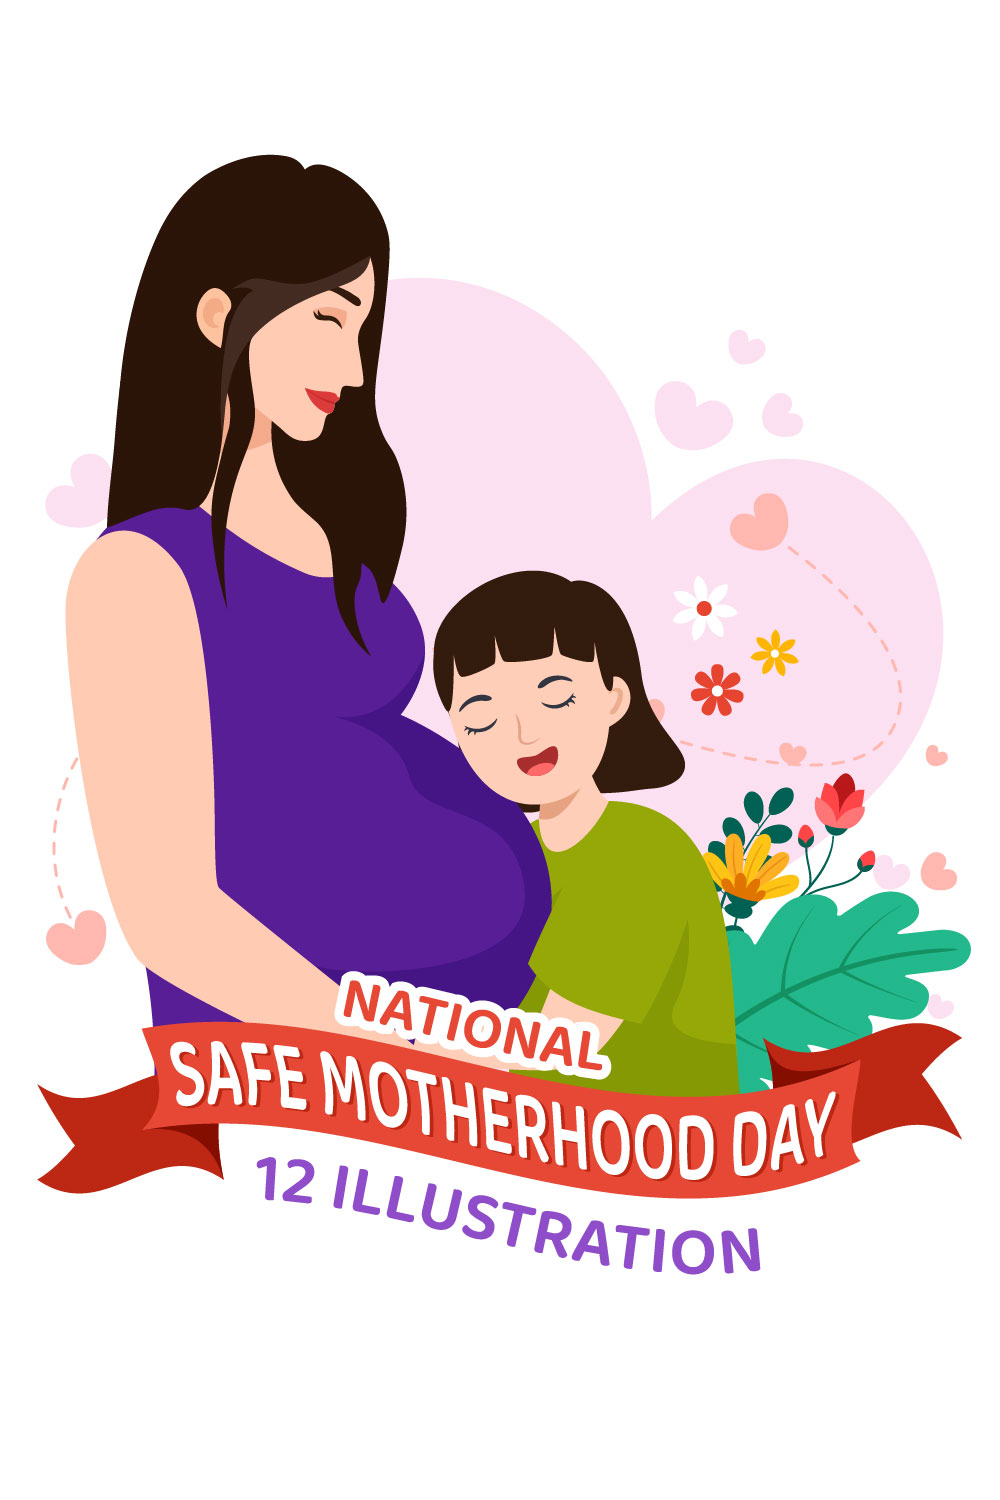 12 National Safe Motherhood Day Illustration pinterest preview image.